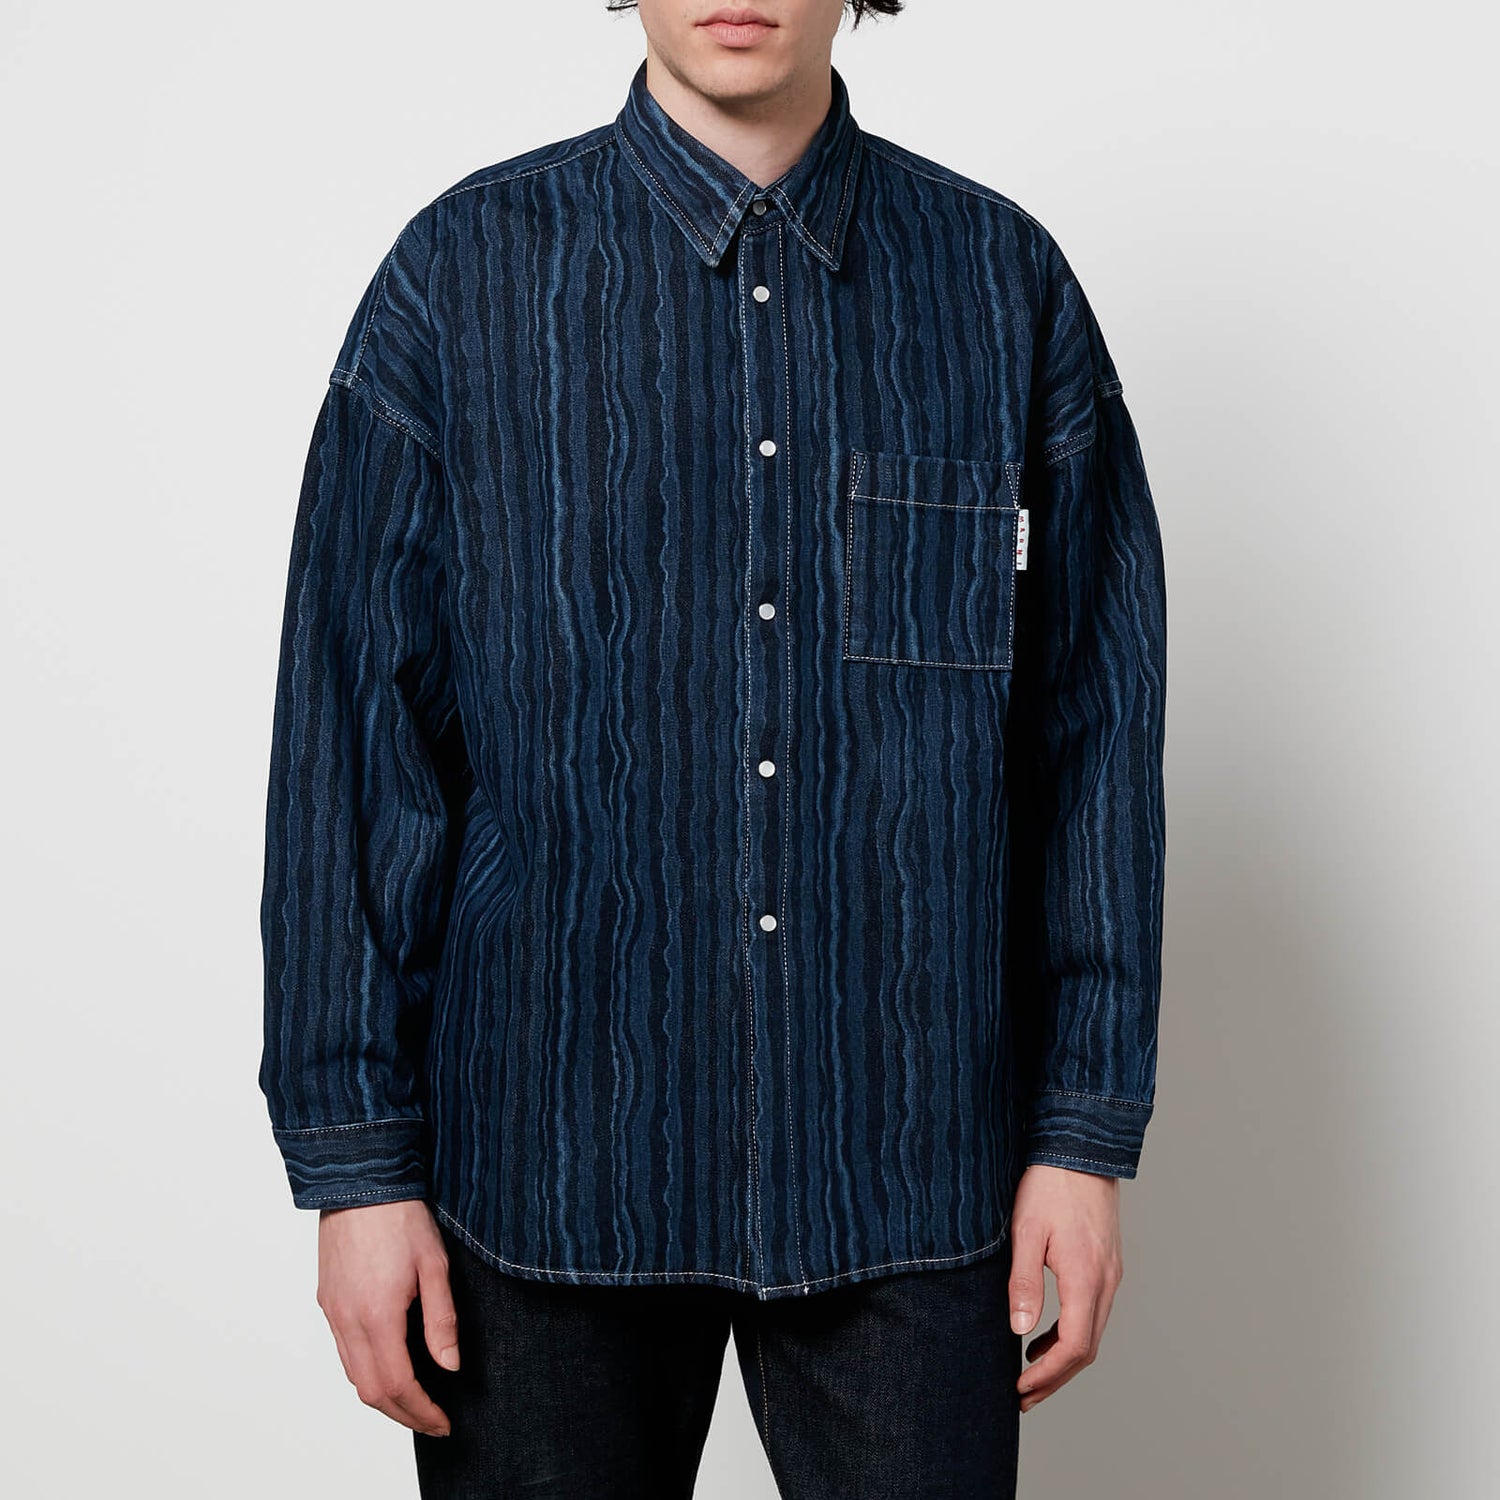 Marni Men's Boxy Shirt - Blue Black - 46/S